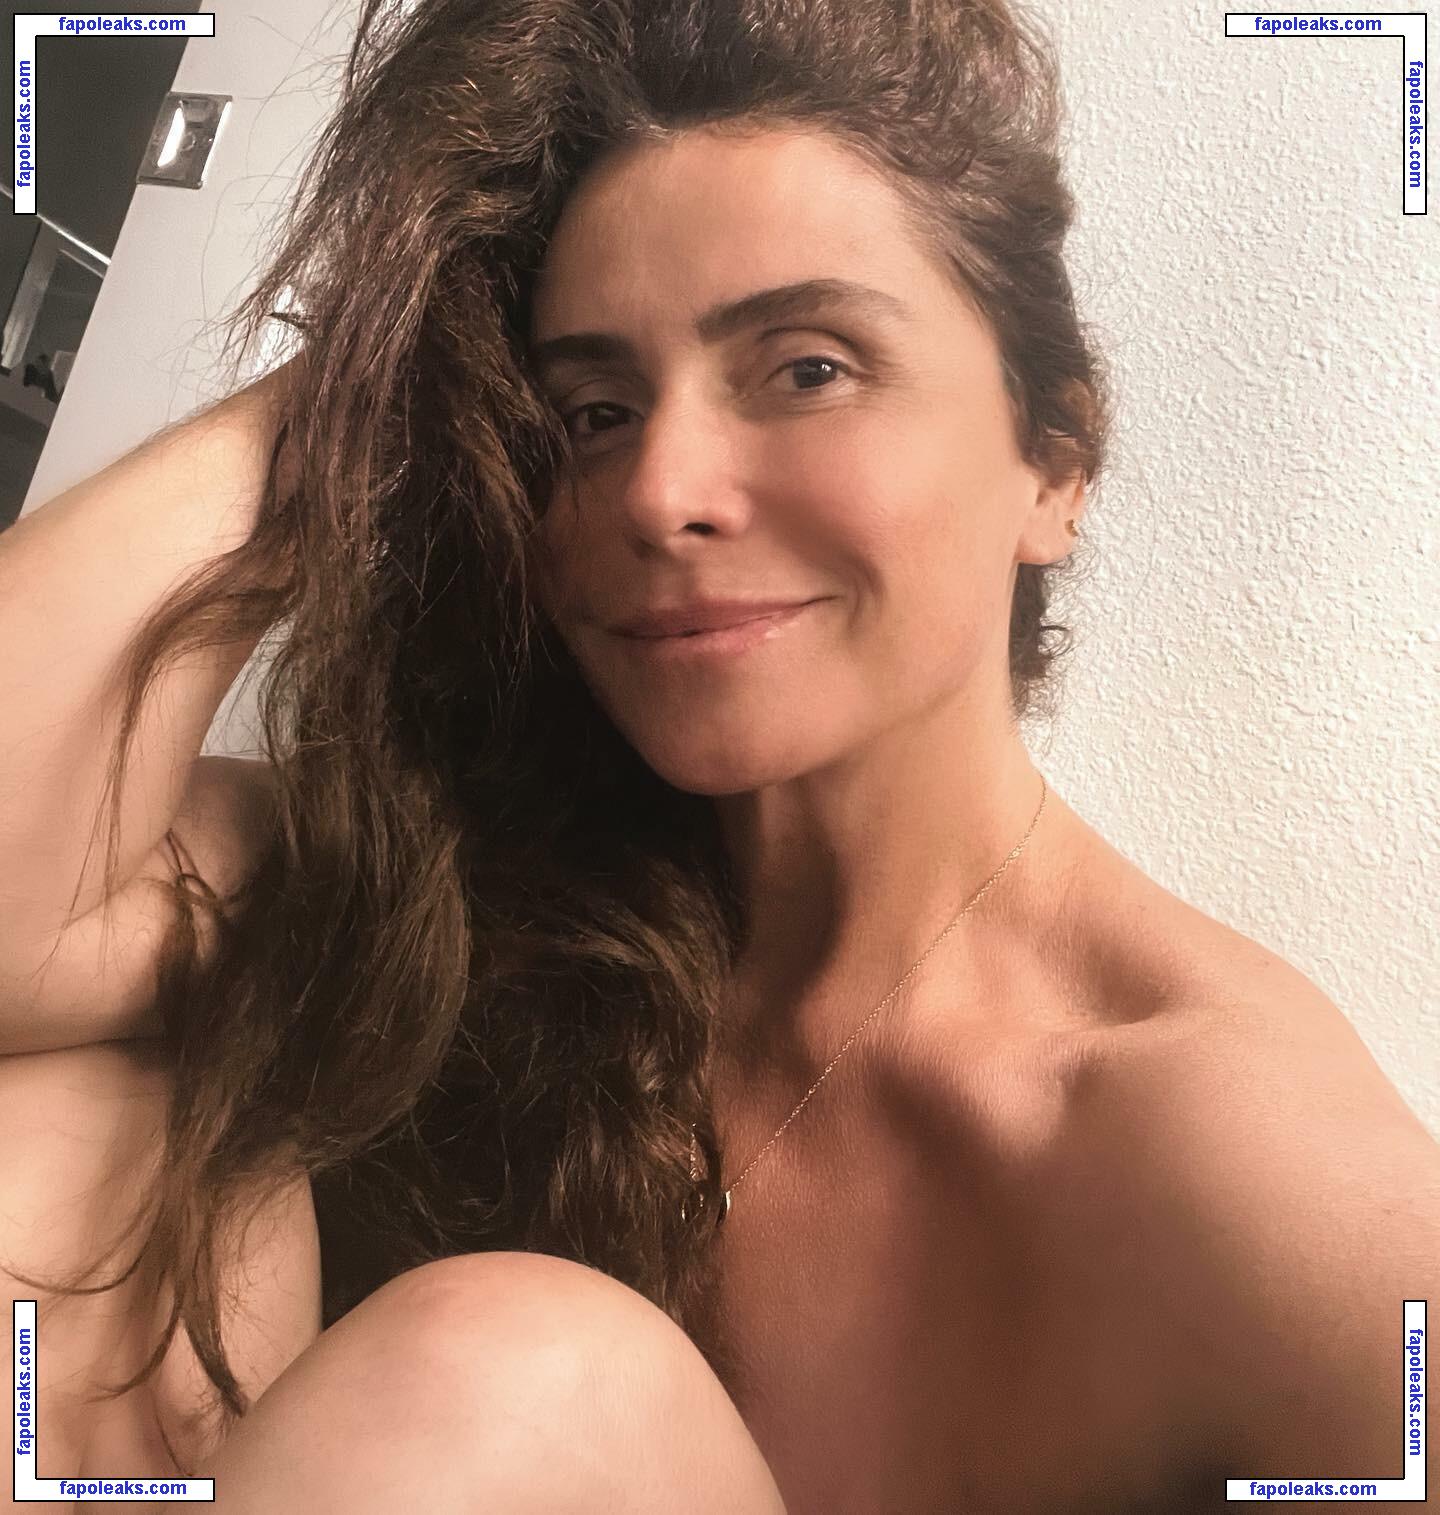 Giovanna Antonelli / giovannaantonelli nude photo #0039 from OnlyFans